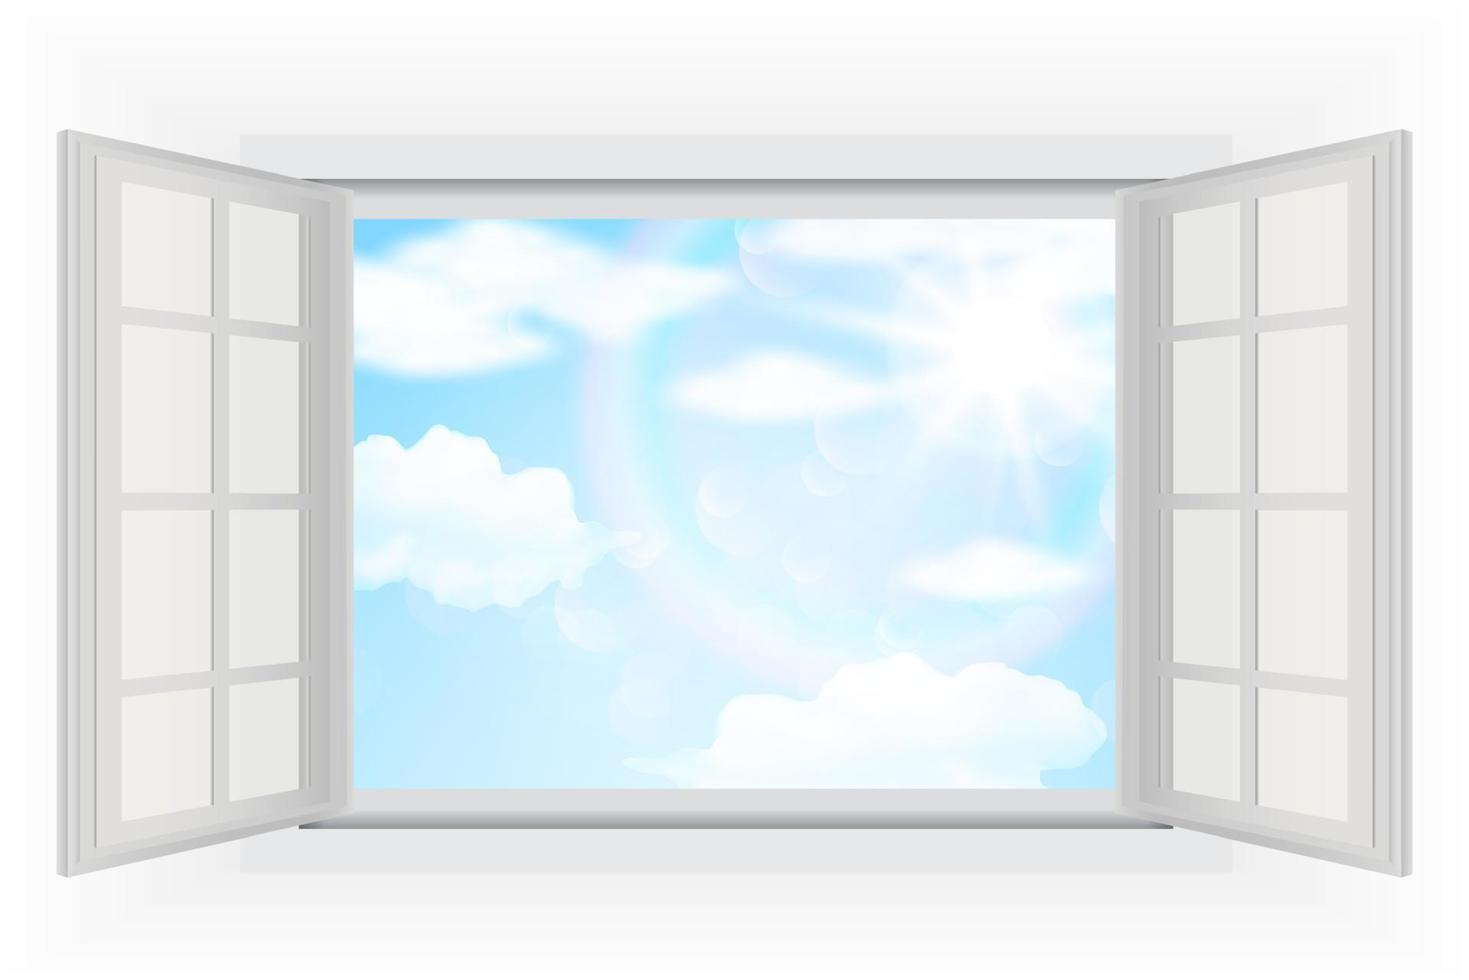 fenêtre ouverte, avec un vrai soleil éclatant, des nuages et un ciel bleu. illustrations vectorielles vecteur